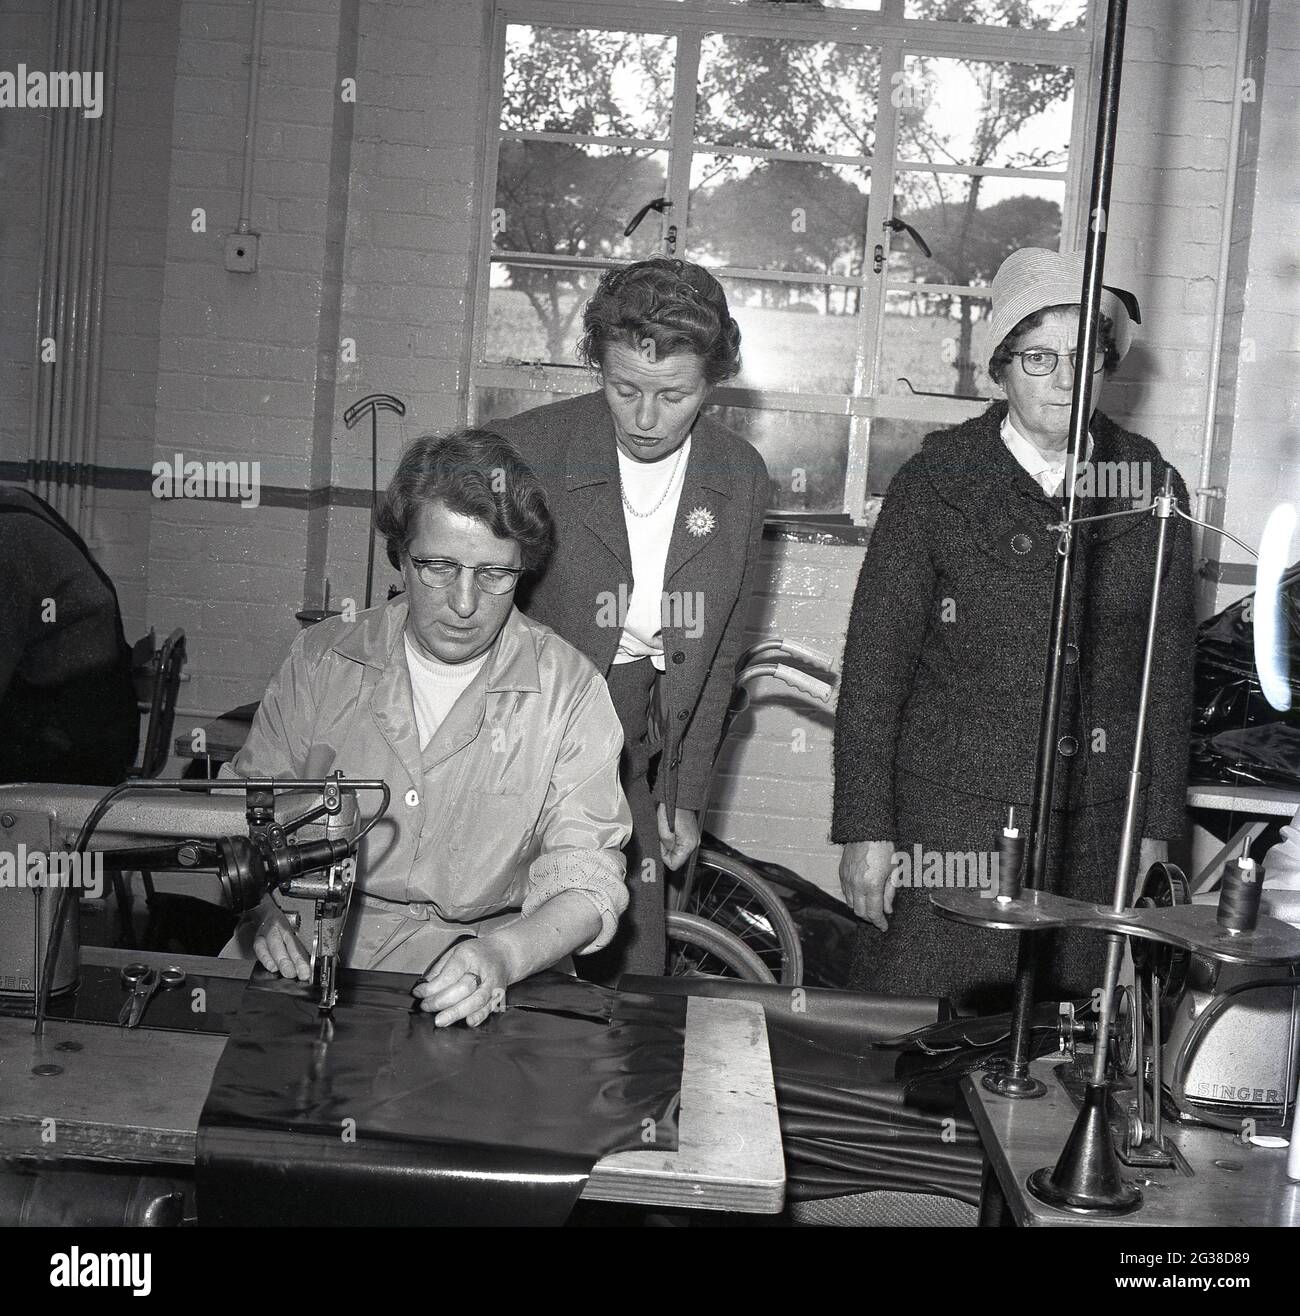 1960s, histórico, dentro de una unidad industrial, dos concejales locales, de pie por una trabajadora, siendo re-empleado en la industria, utilizando una máquina para coser o sellar láminas protectoras, Cowdenbeath, Fife, Escocia. Foto de stock